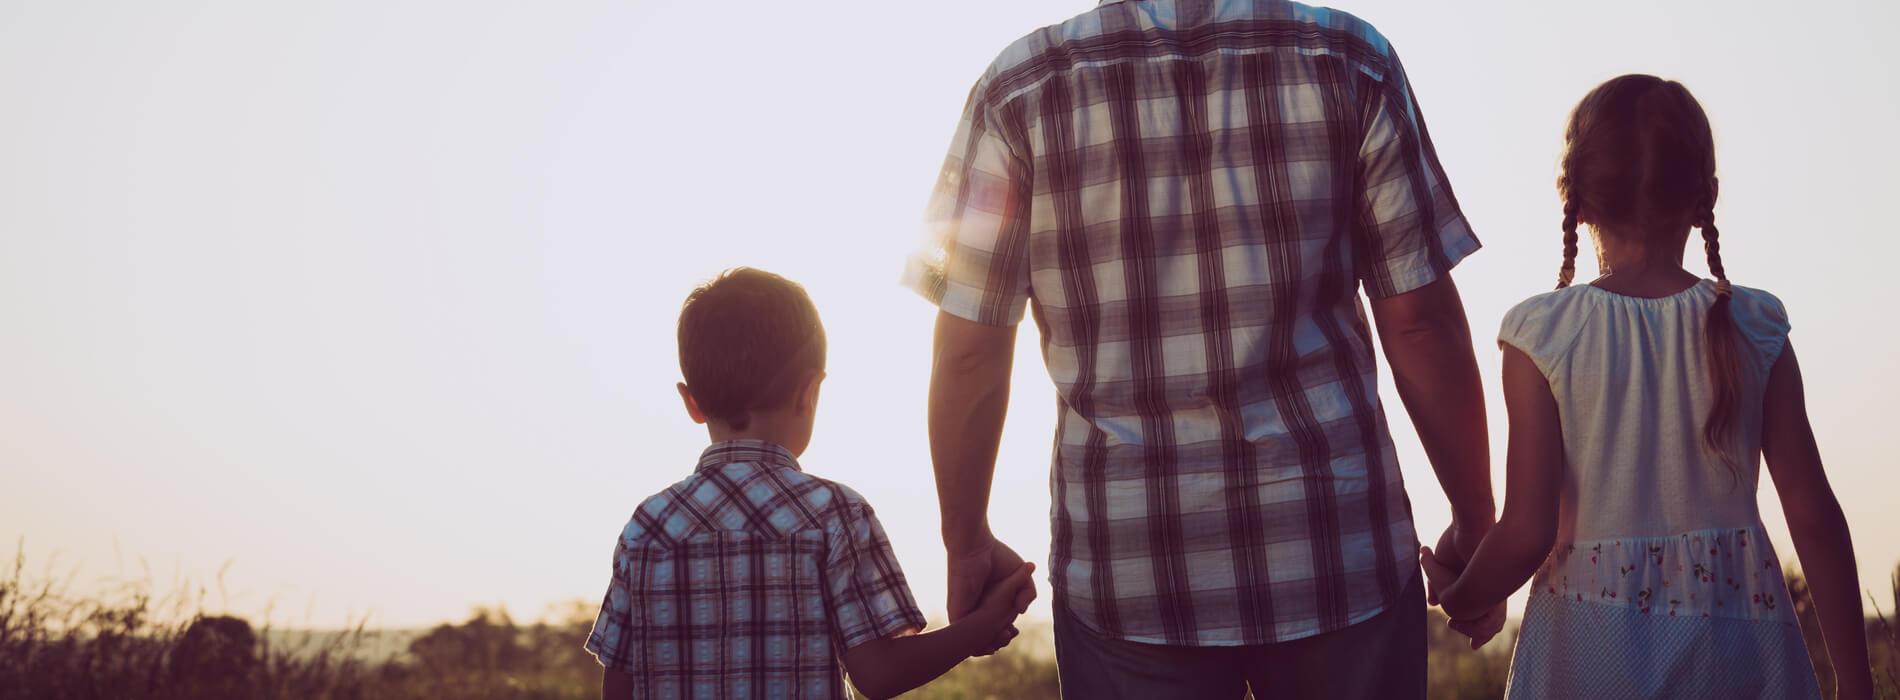 Uznanie ojcostwa - czy należy wykonać badanie na ojcostwo?